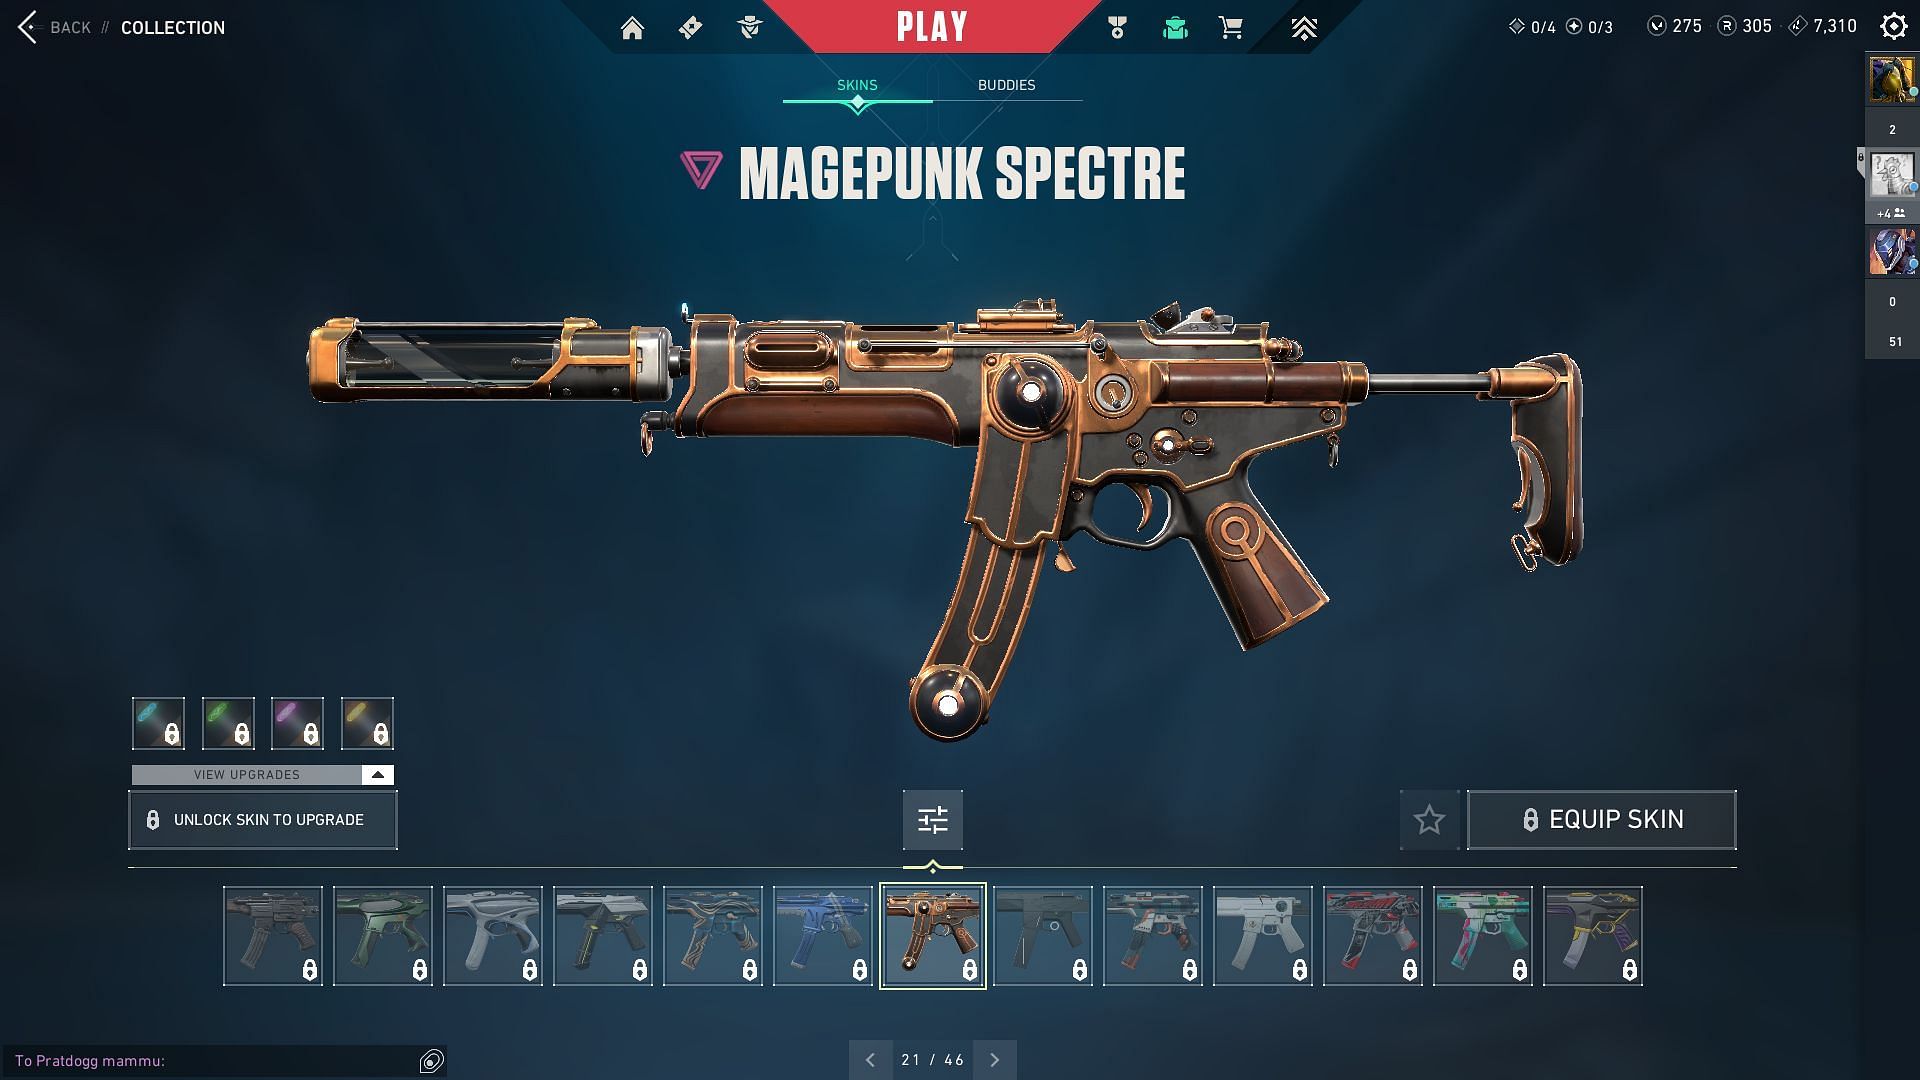 Magepunk Spectre (Image via Sportskeeda and Riot Games)